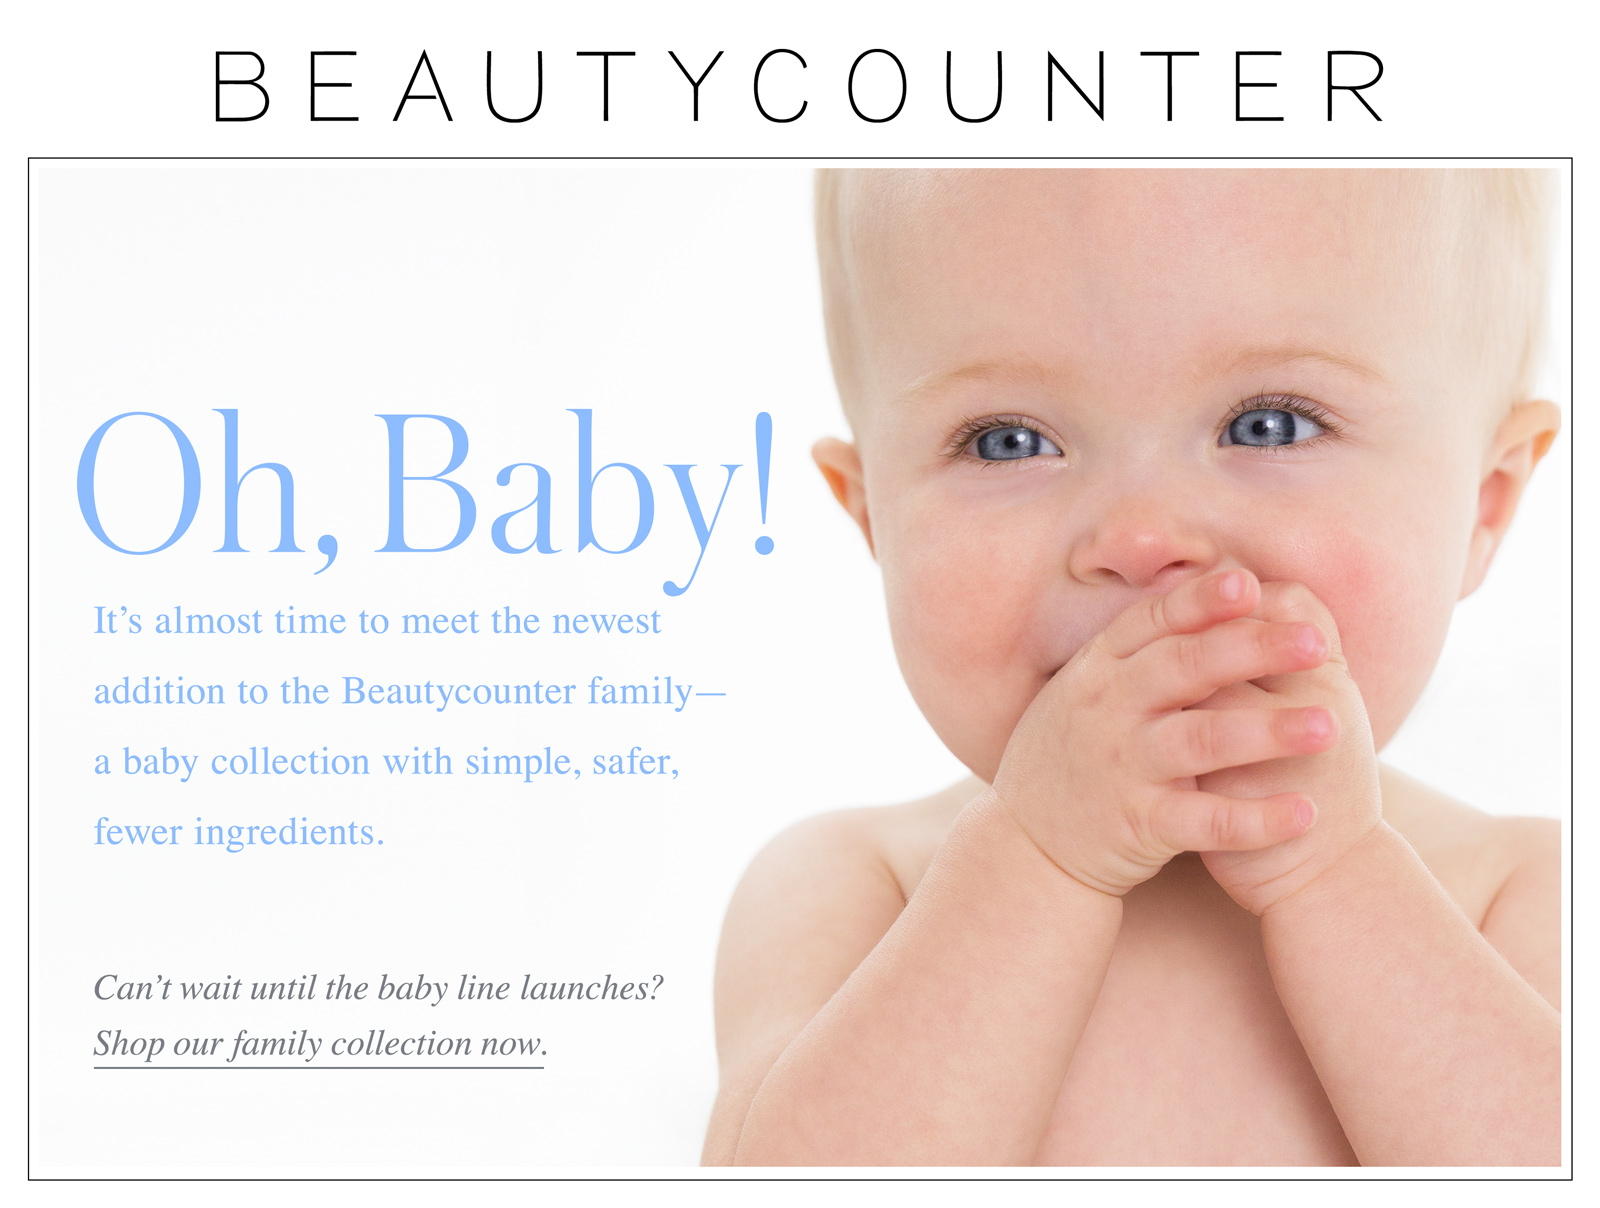 000015-Beautycounter_BabyLaunch-TeaserEmailcopy